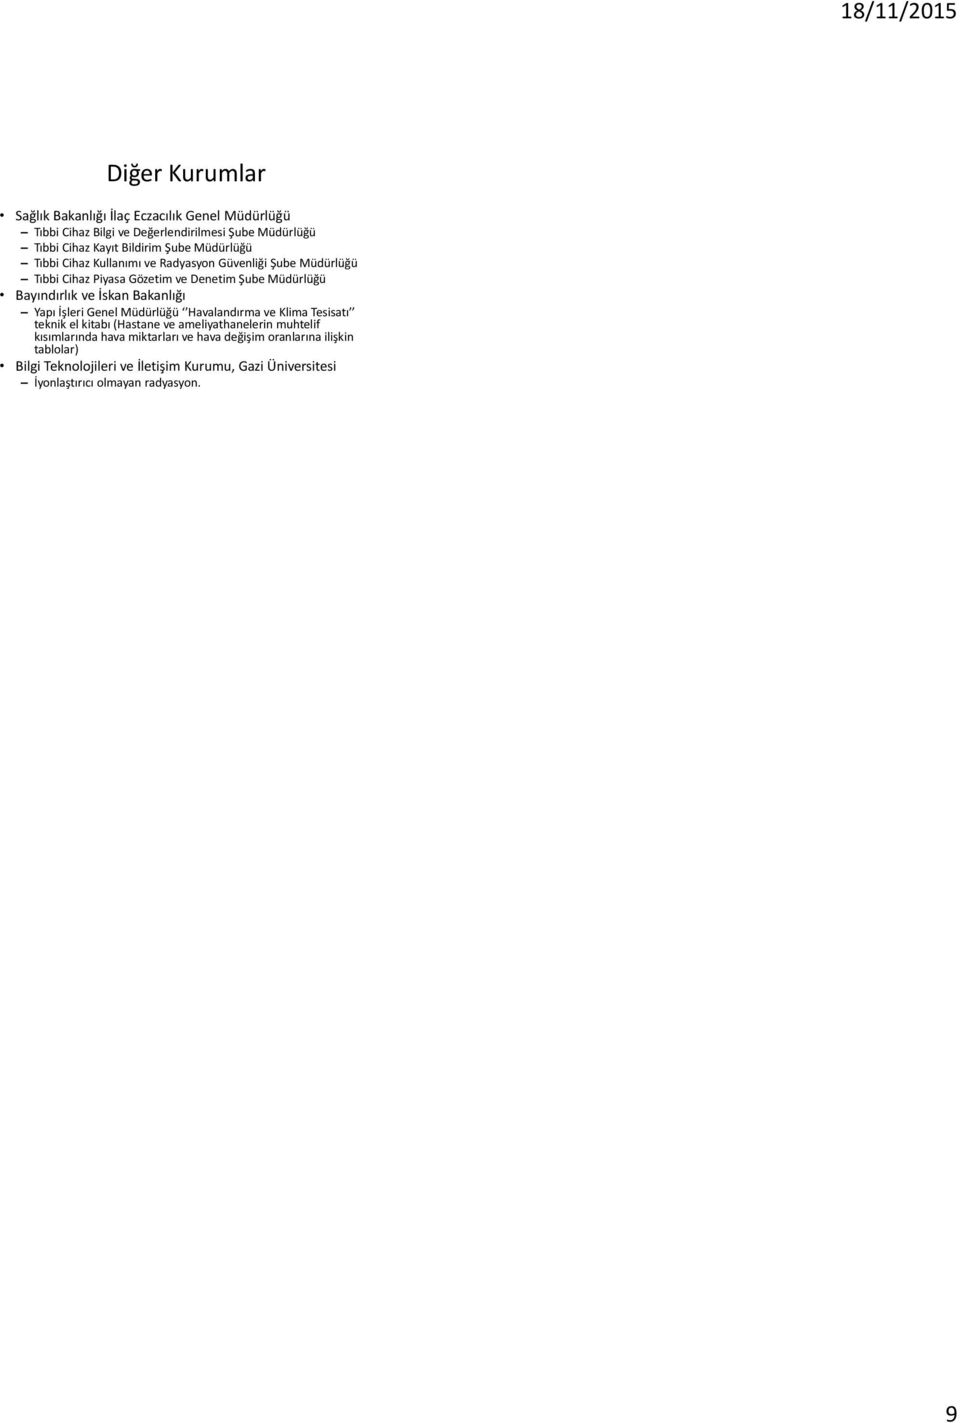 İskan Bakanlığı Yapı İşleri Genel Müdürlüğü Havalandırma ve Klima Tesisatı teknik el kitabı (Hastane ve ameliyathanelerin muhtelif kısımlarında